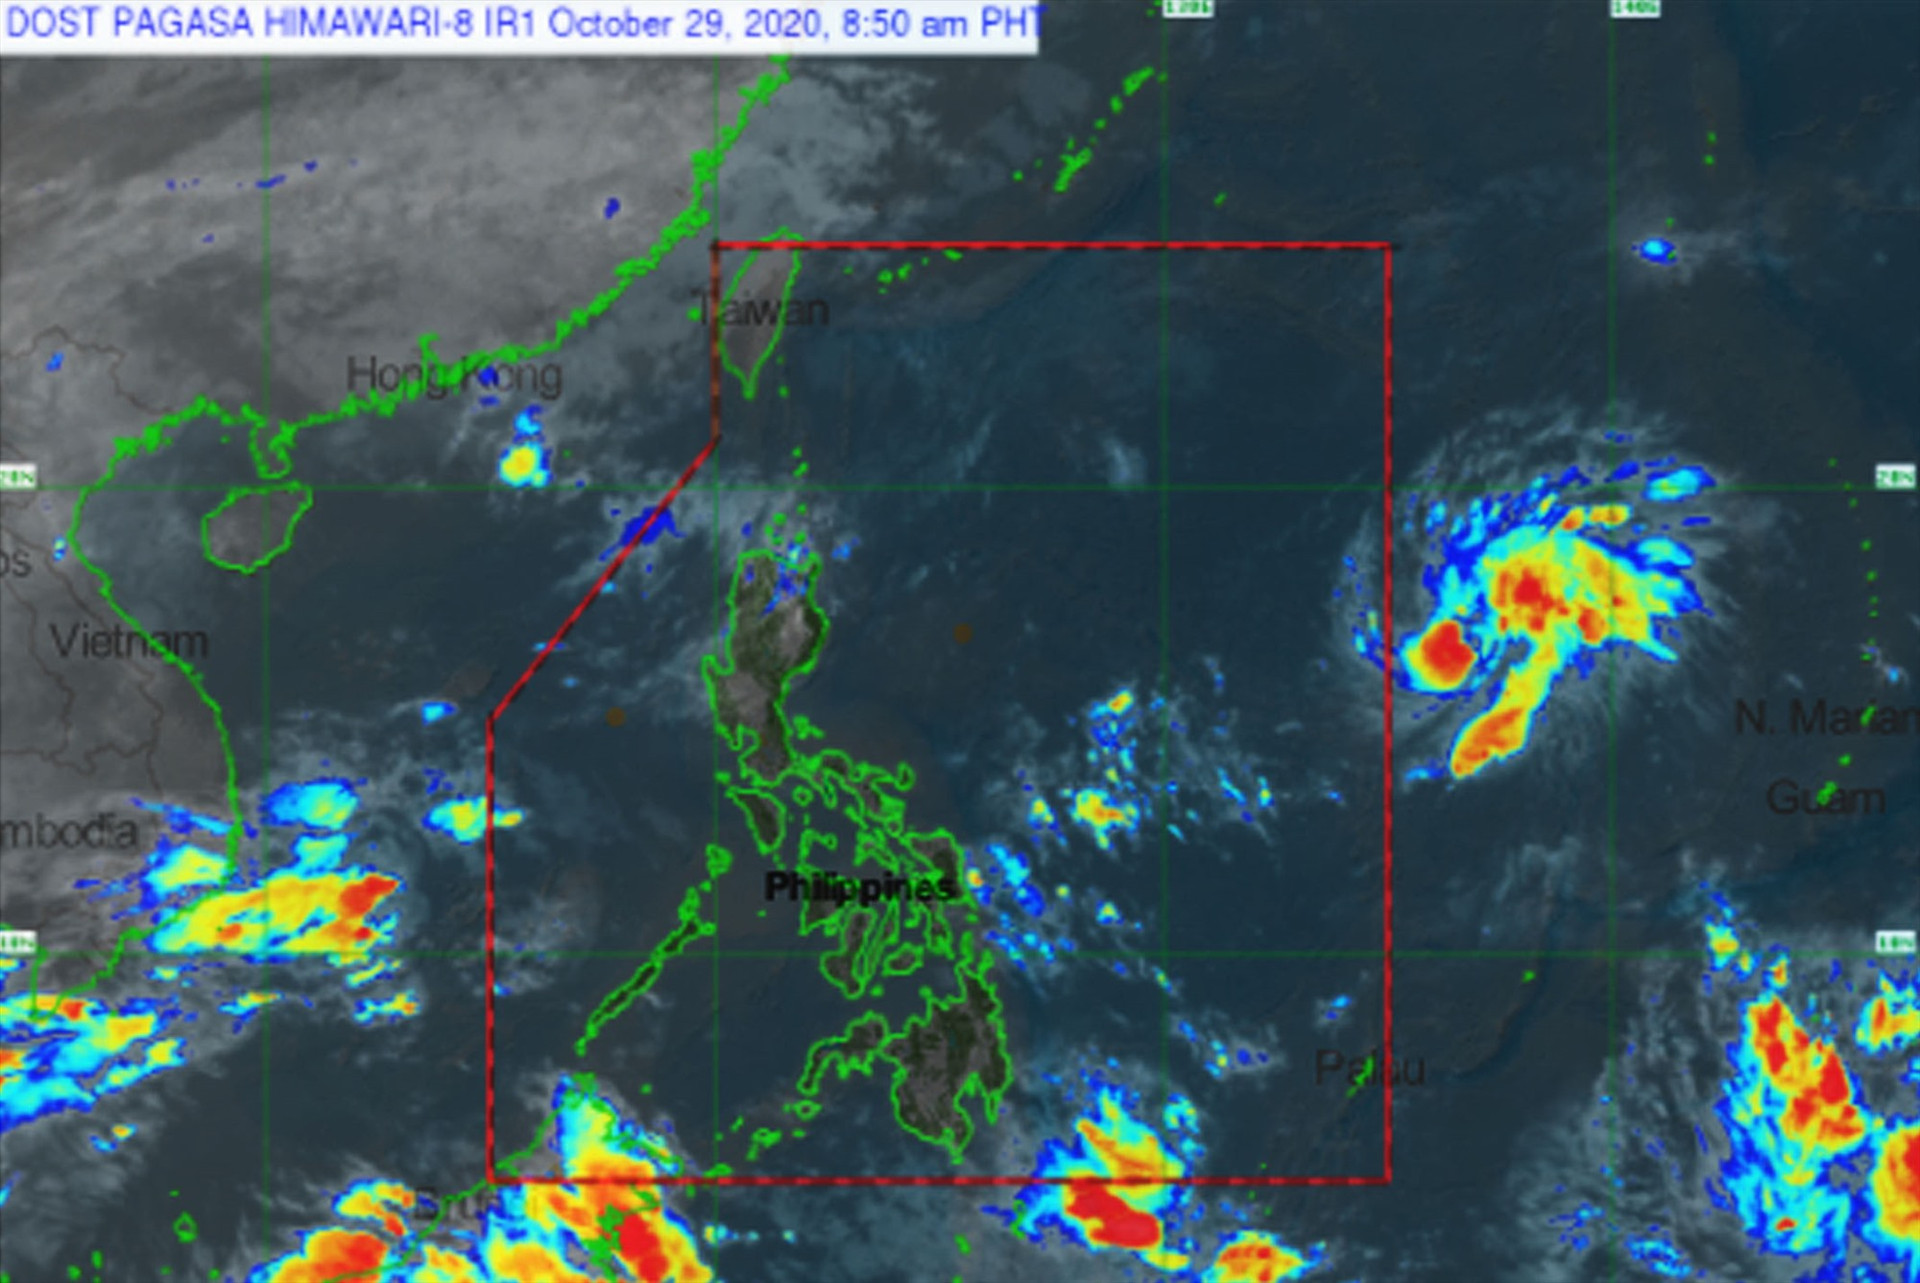 Hình ảnh về áp thấp nhiệt đới mạnh lên thành bão trong những ngày tới tại Philippines. Ảnh: PAGASA